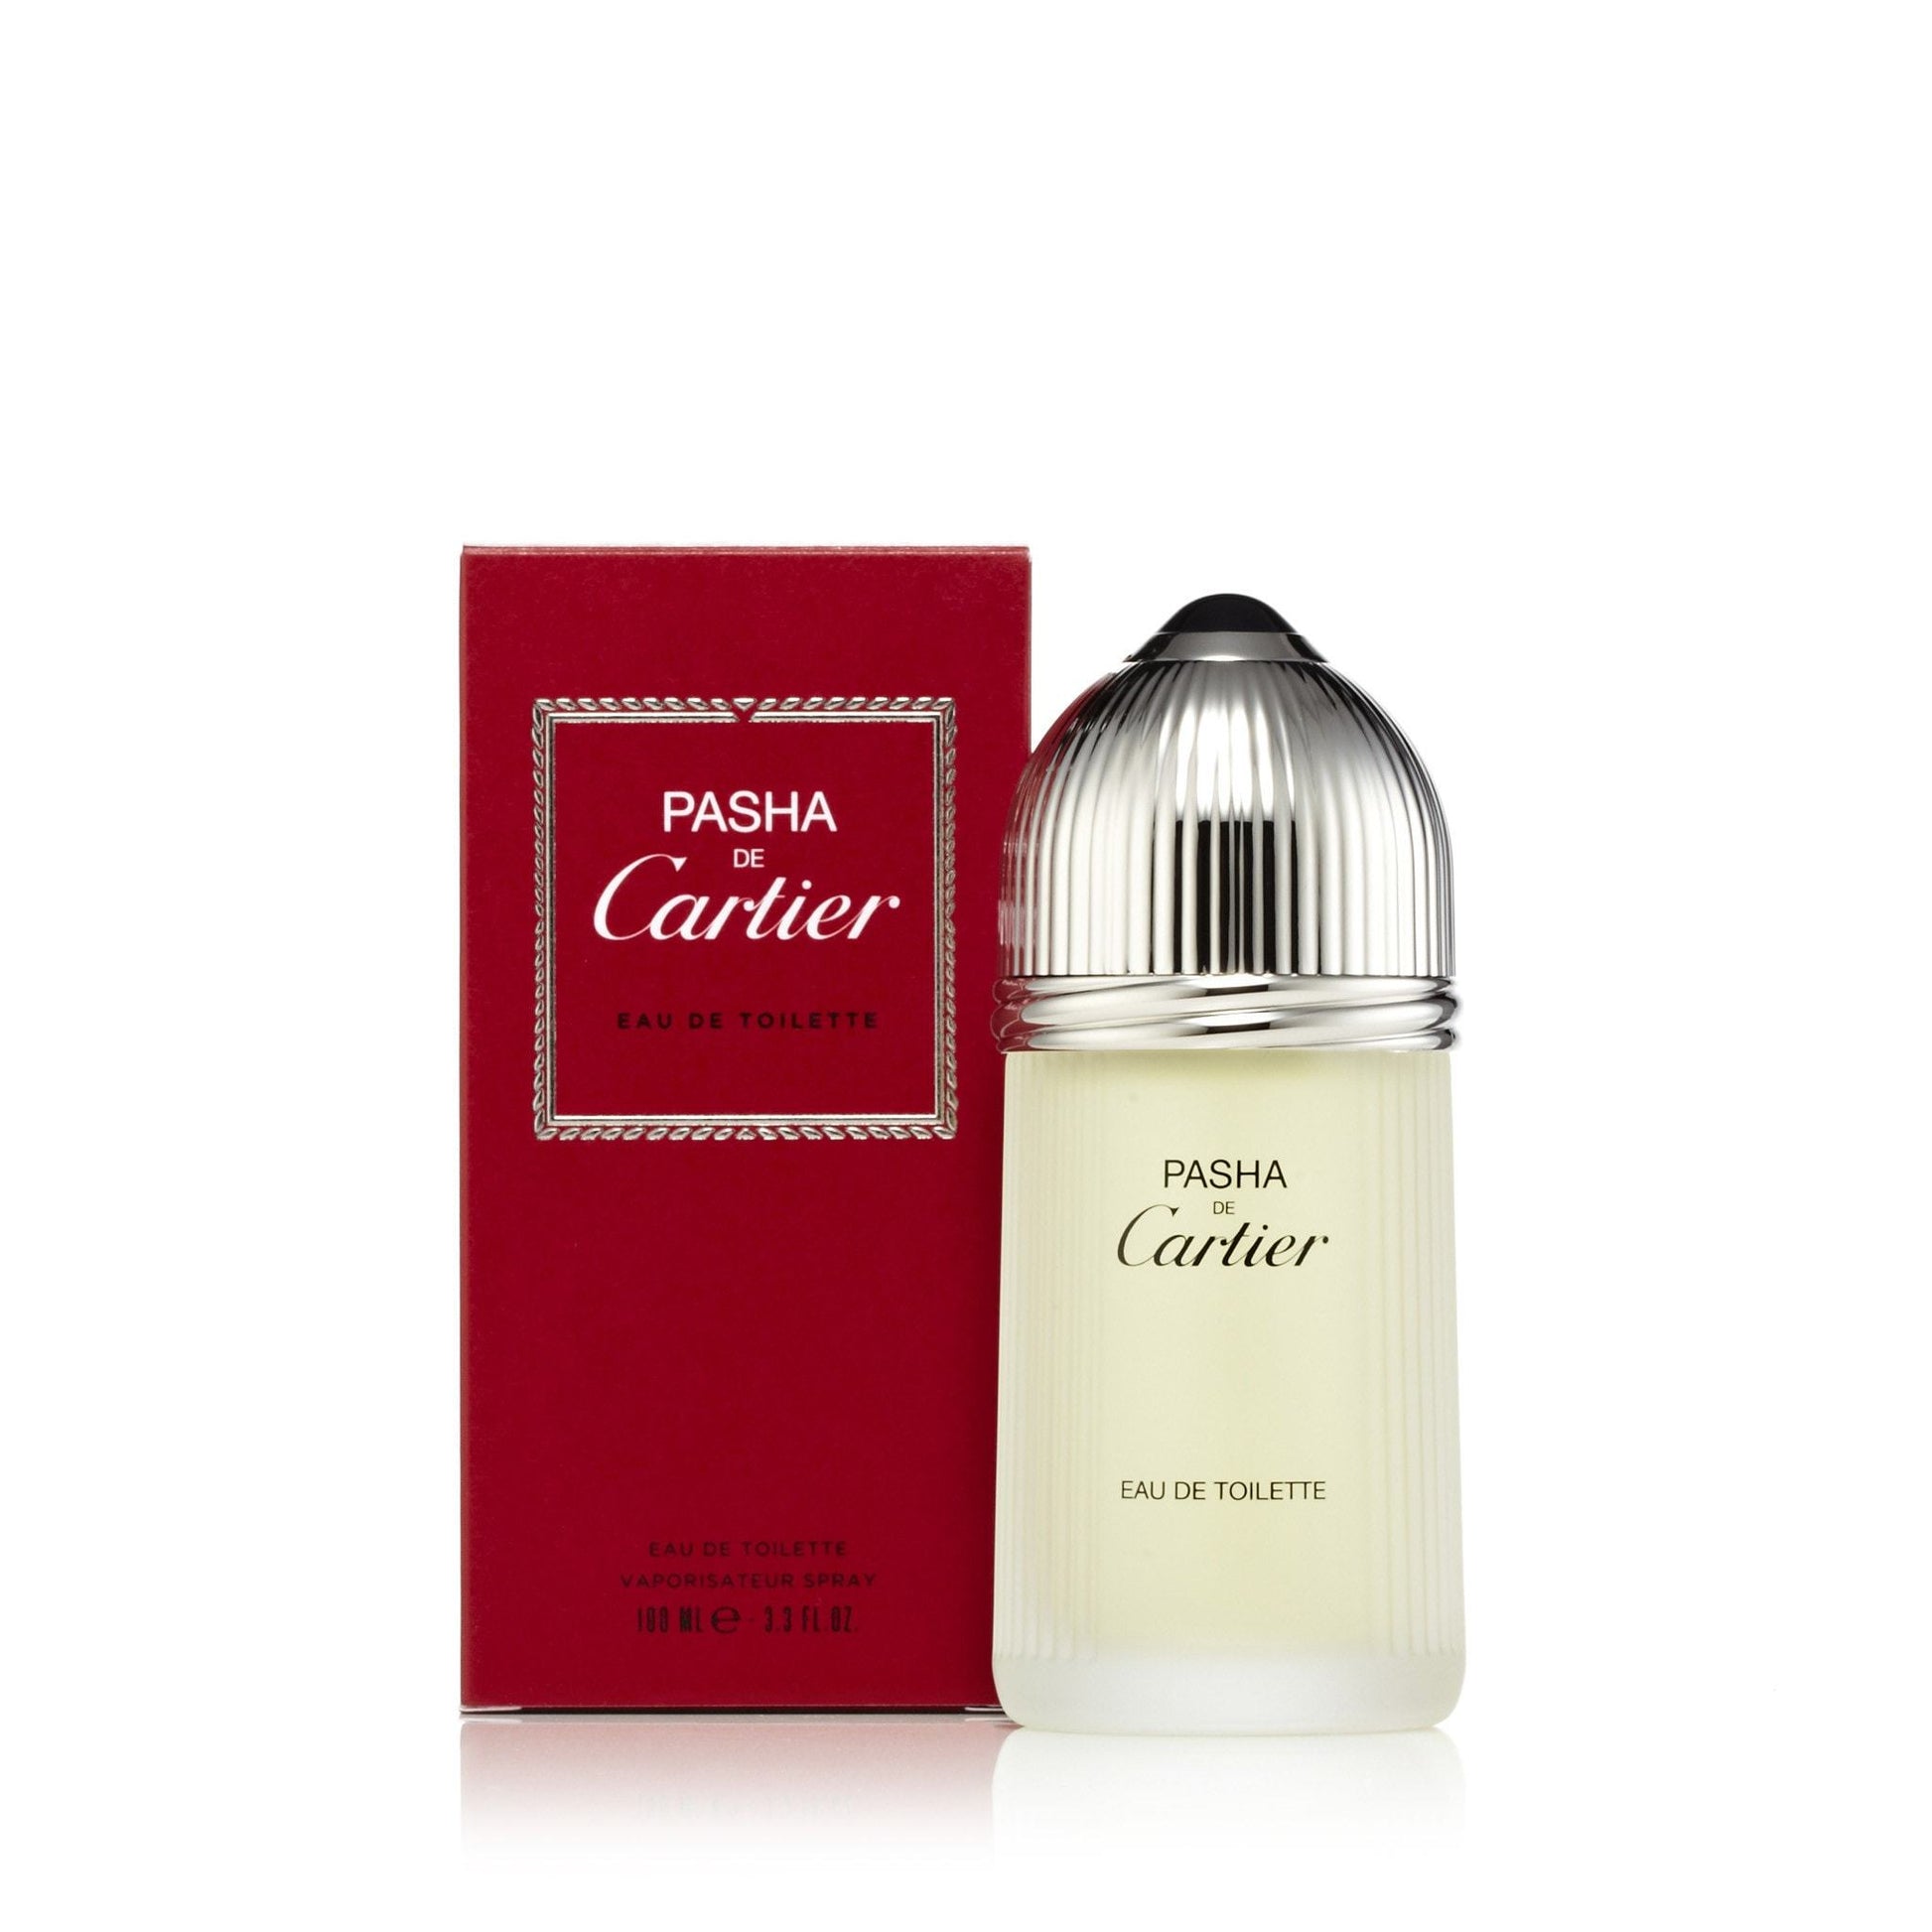 Pasha Eau de Toilette Spray for Men by Cartier, Product image 1